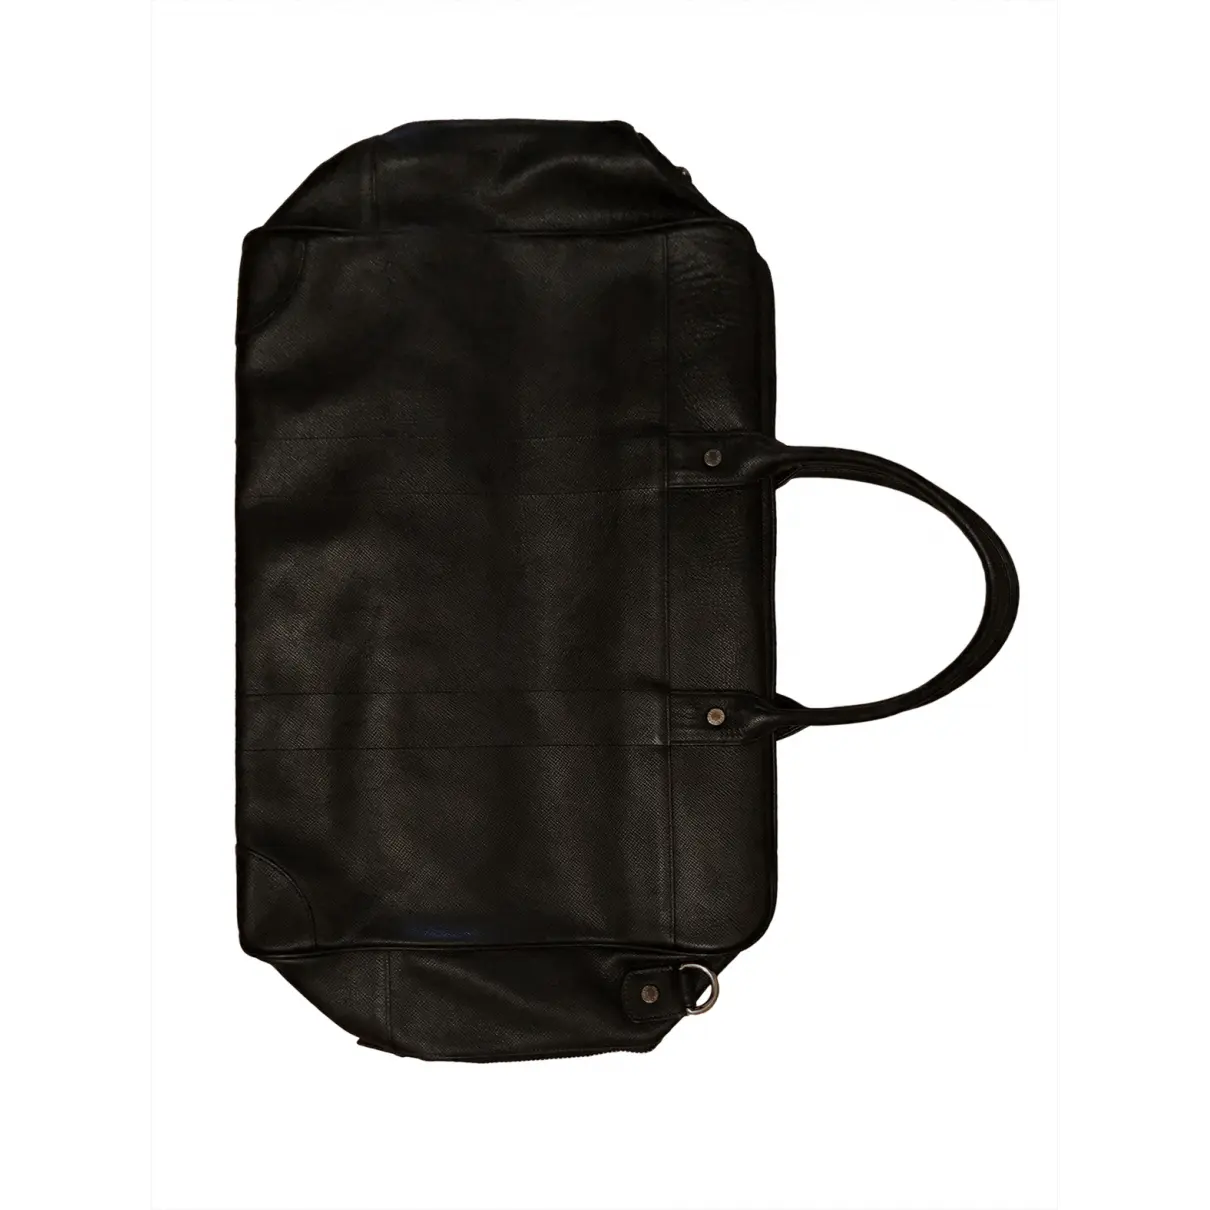 Leather travel bag Globetrotter